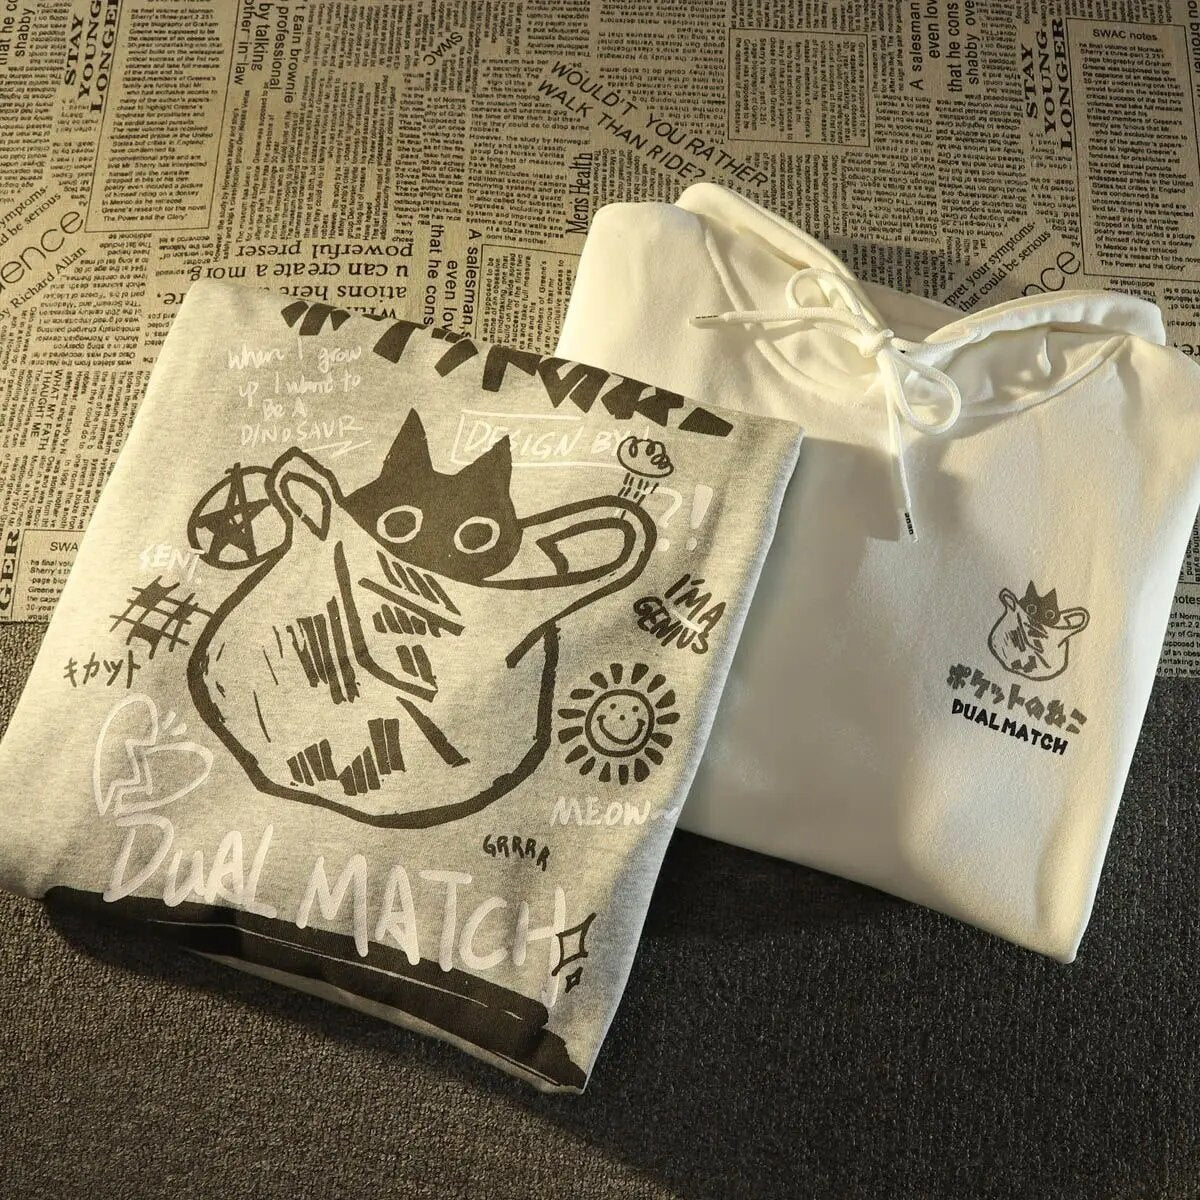 Harajuku Black Cat Hoodie In A Bag